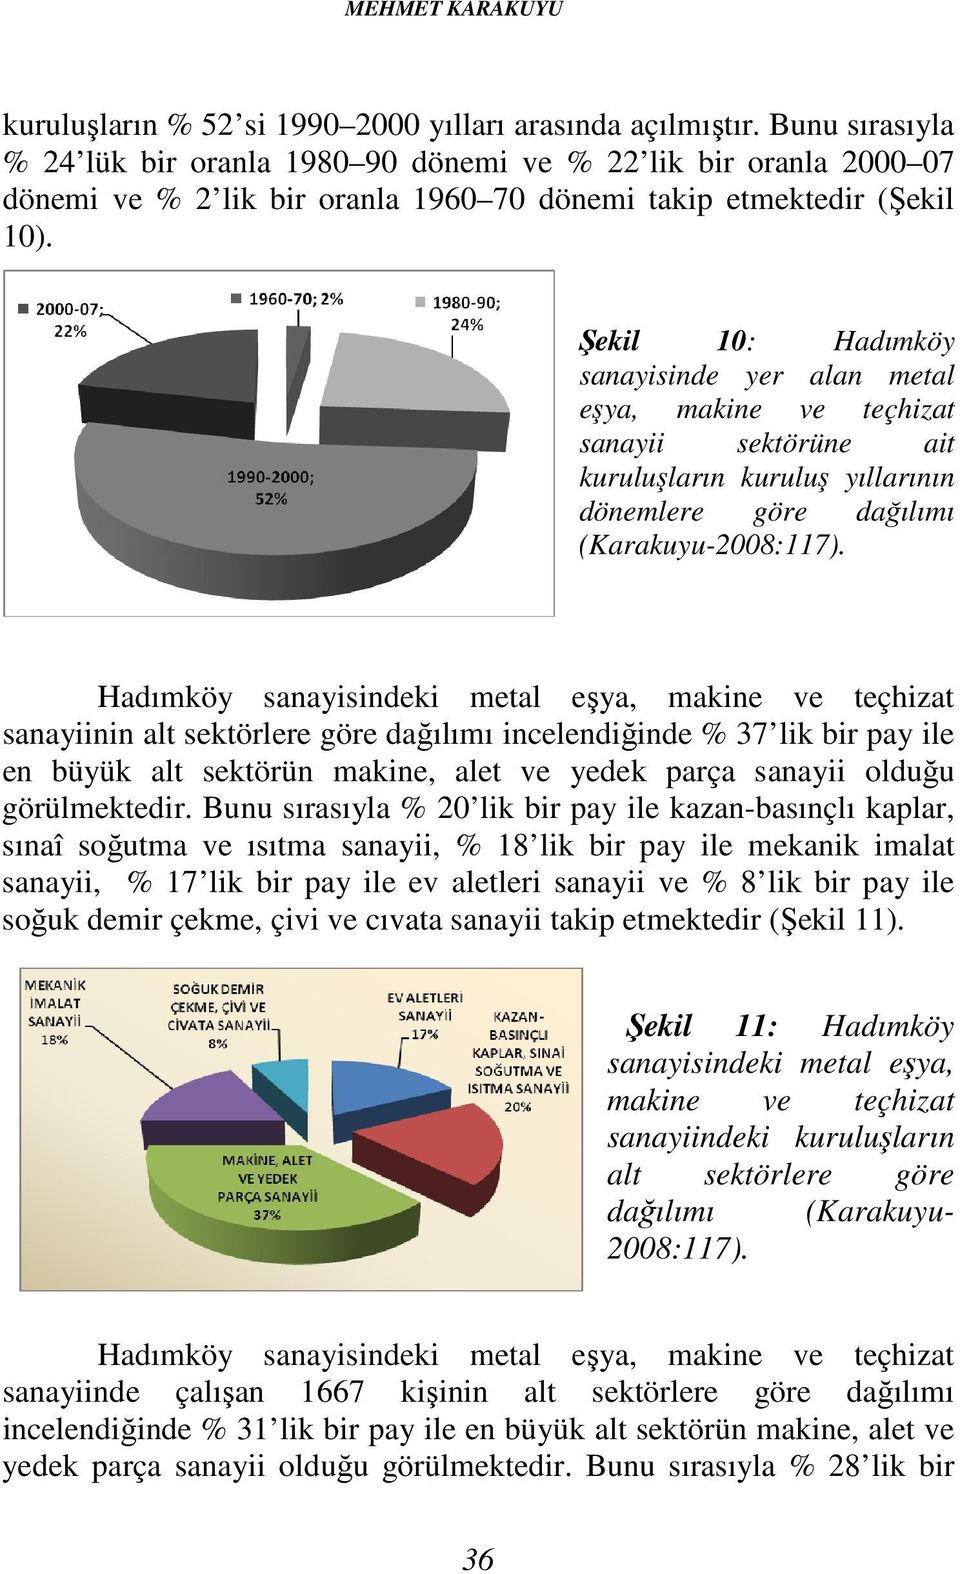 Şekil 10: Hadımköy sanayisinde yer alan metal eşya, makine ve teçhizat sanayii sektörüne ait kuruluşların kuruluş yıllarının dönemlere göre dağılımı (Karakuyu-2008:117).